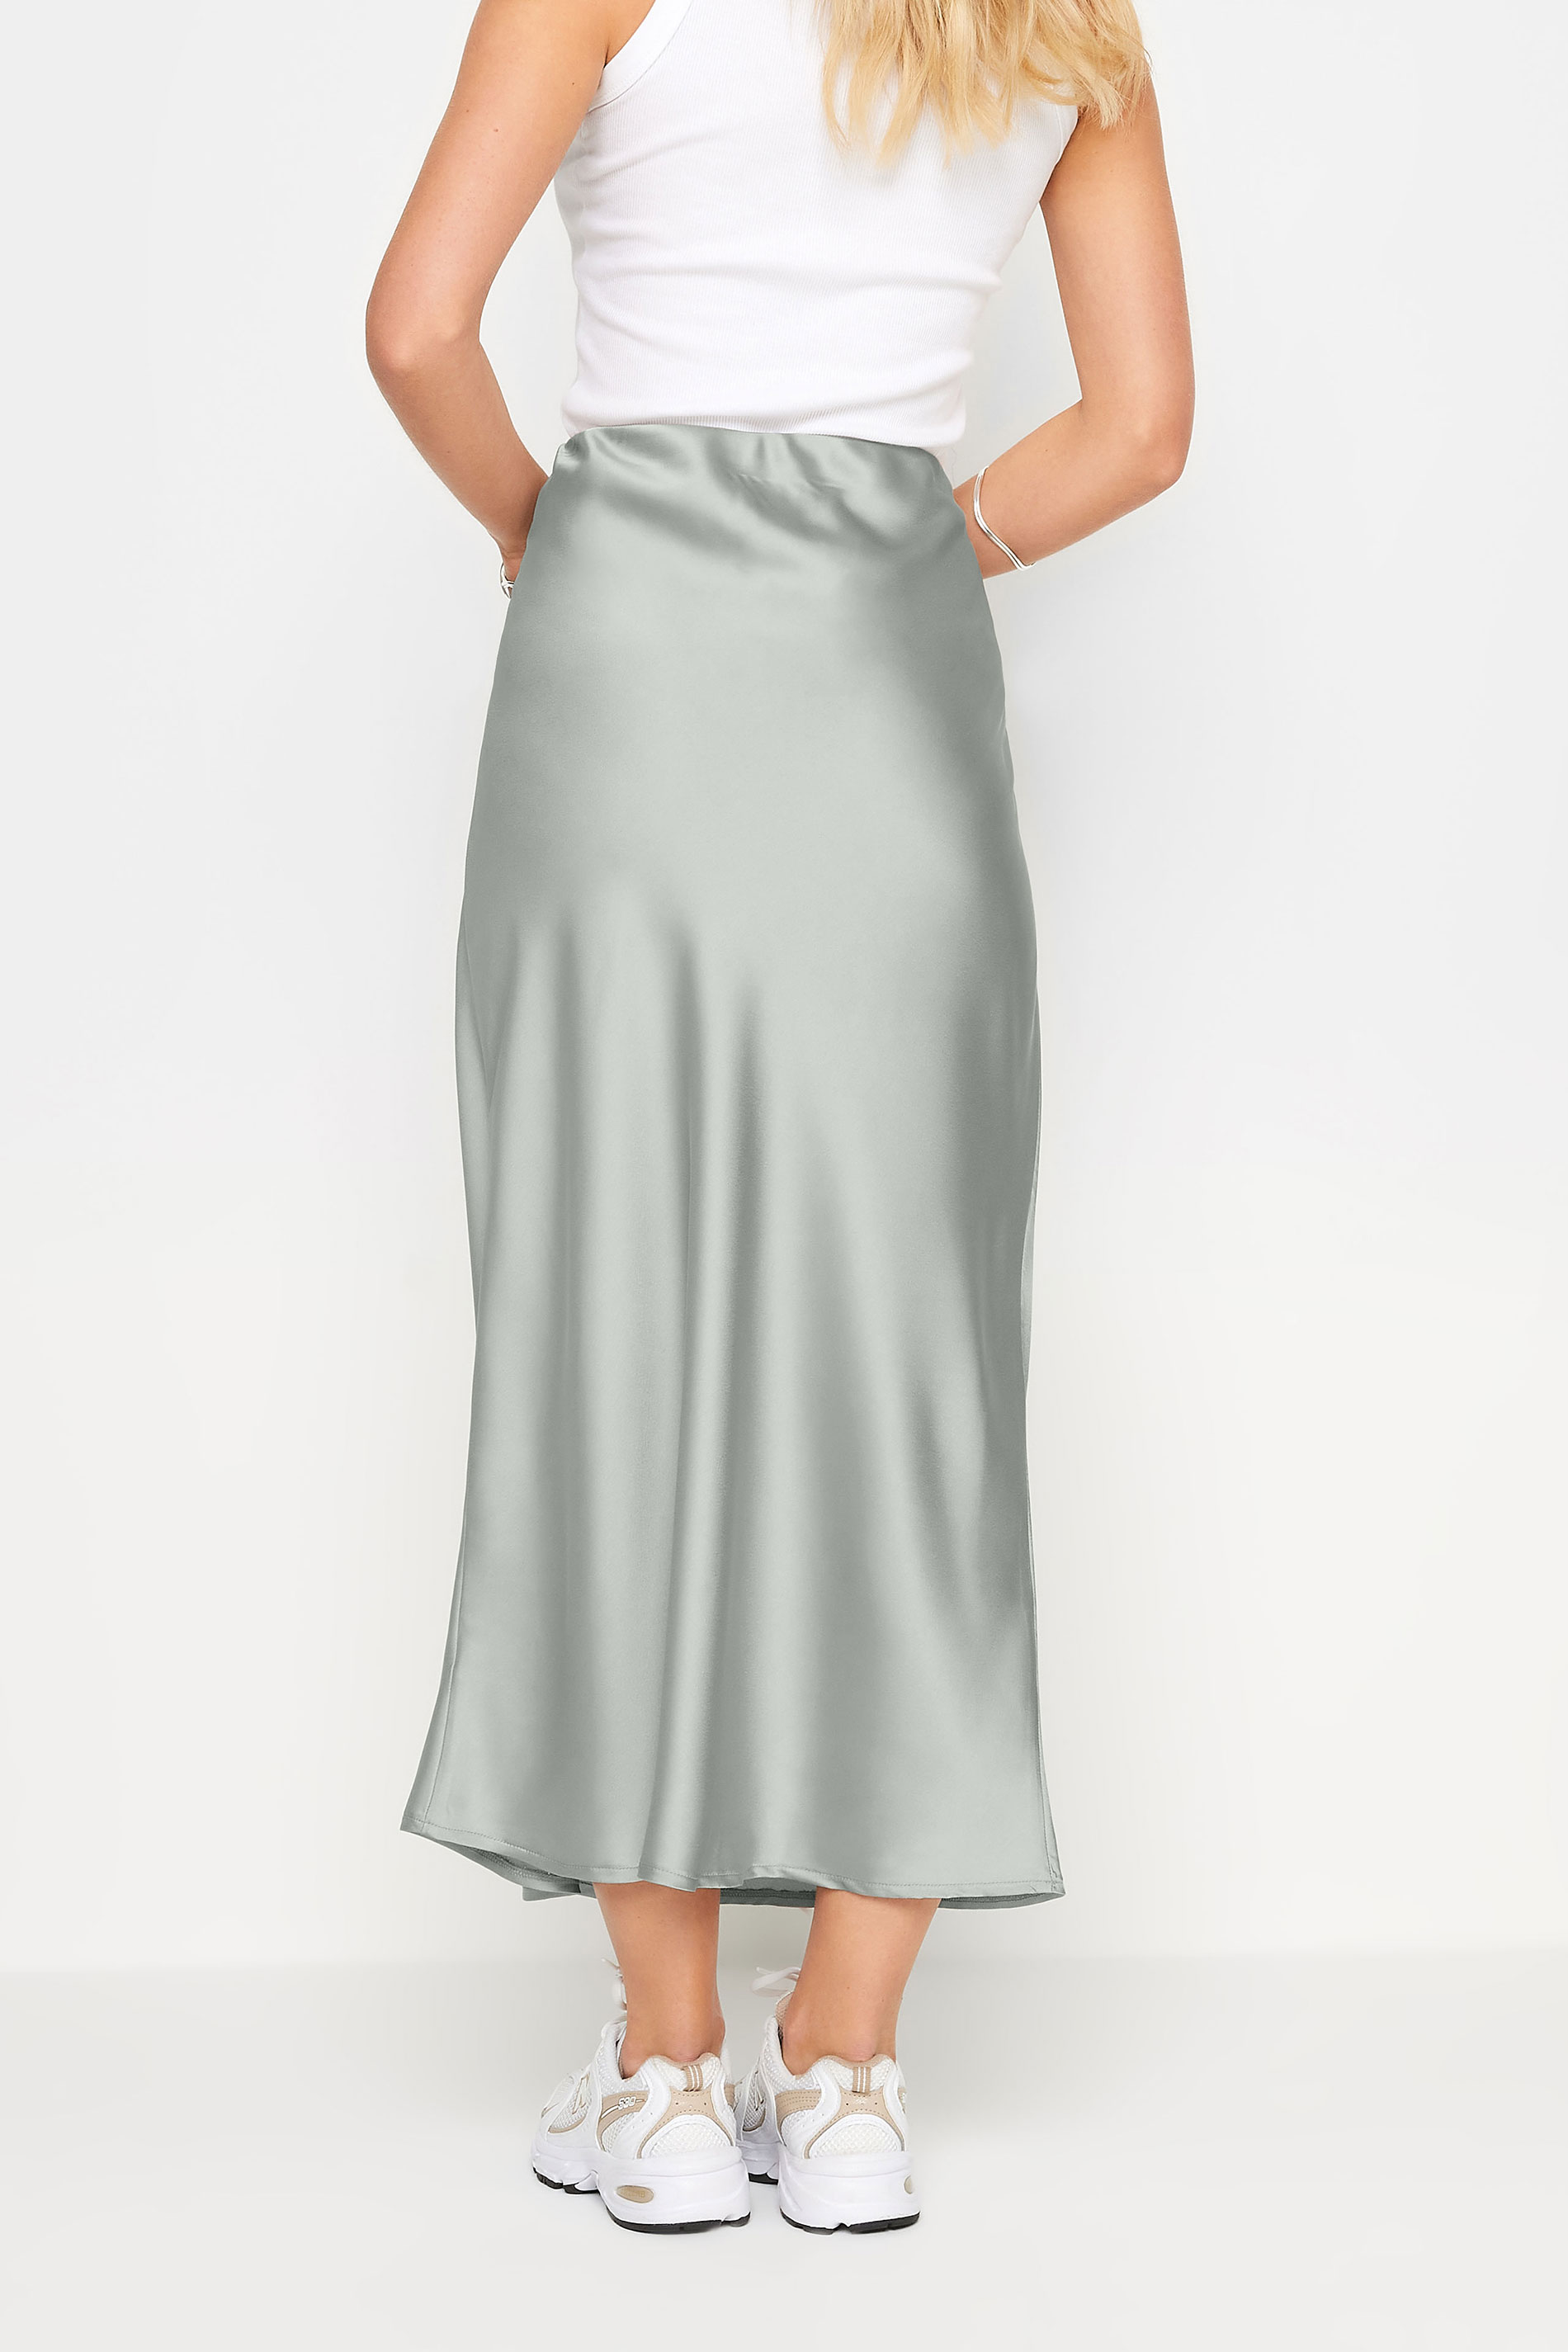 PixieGirl Petite Women's Grey Satin Midaxi Skirt | PixieGirl 3